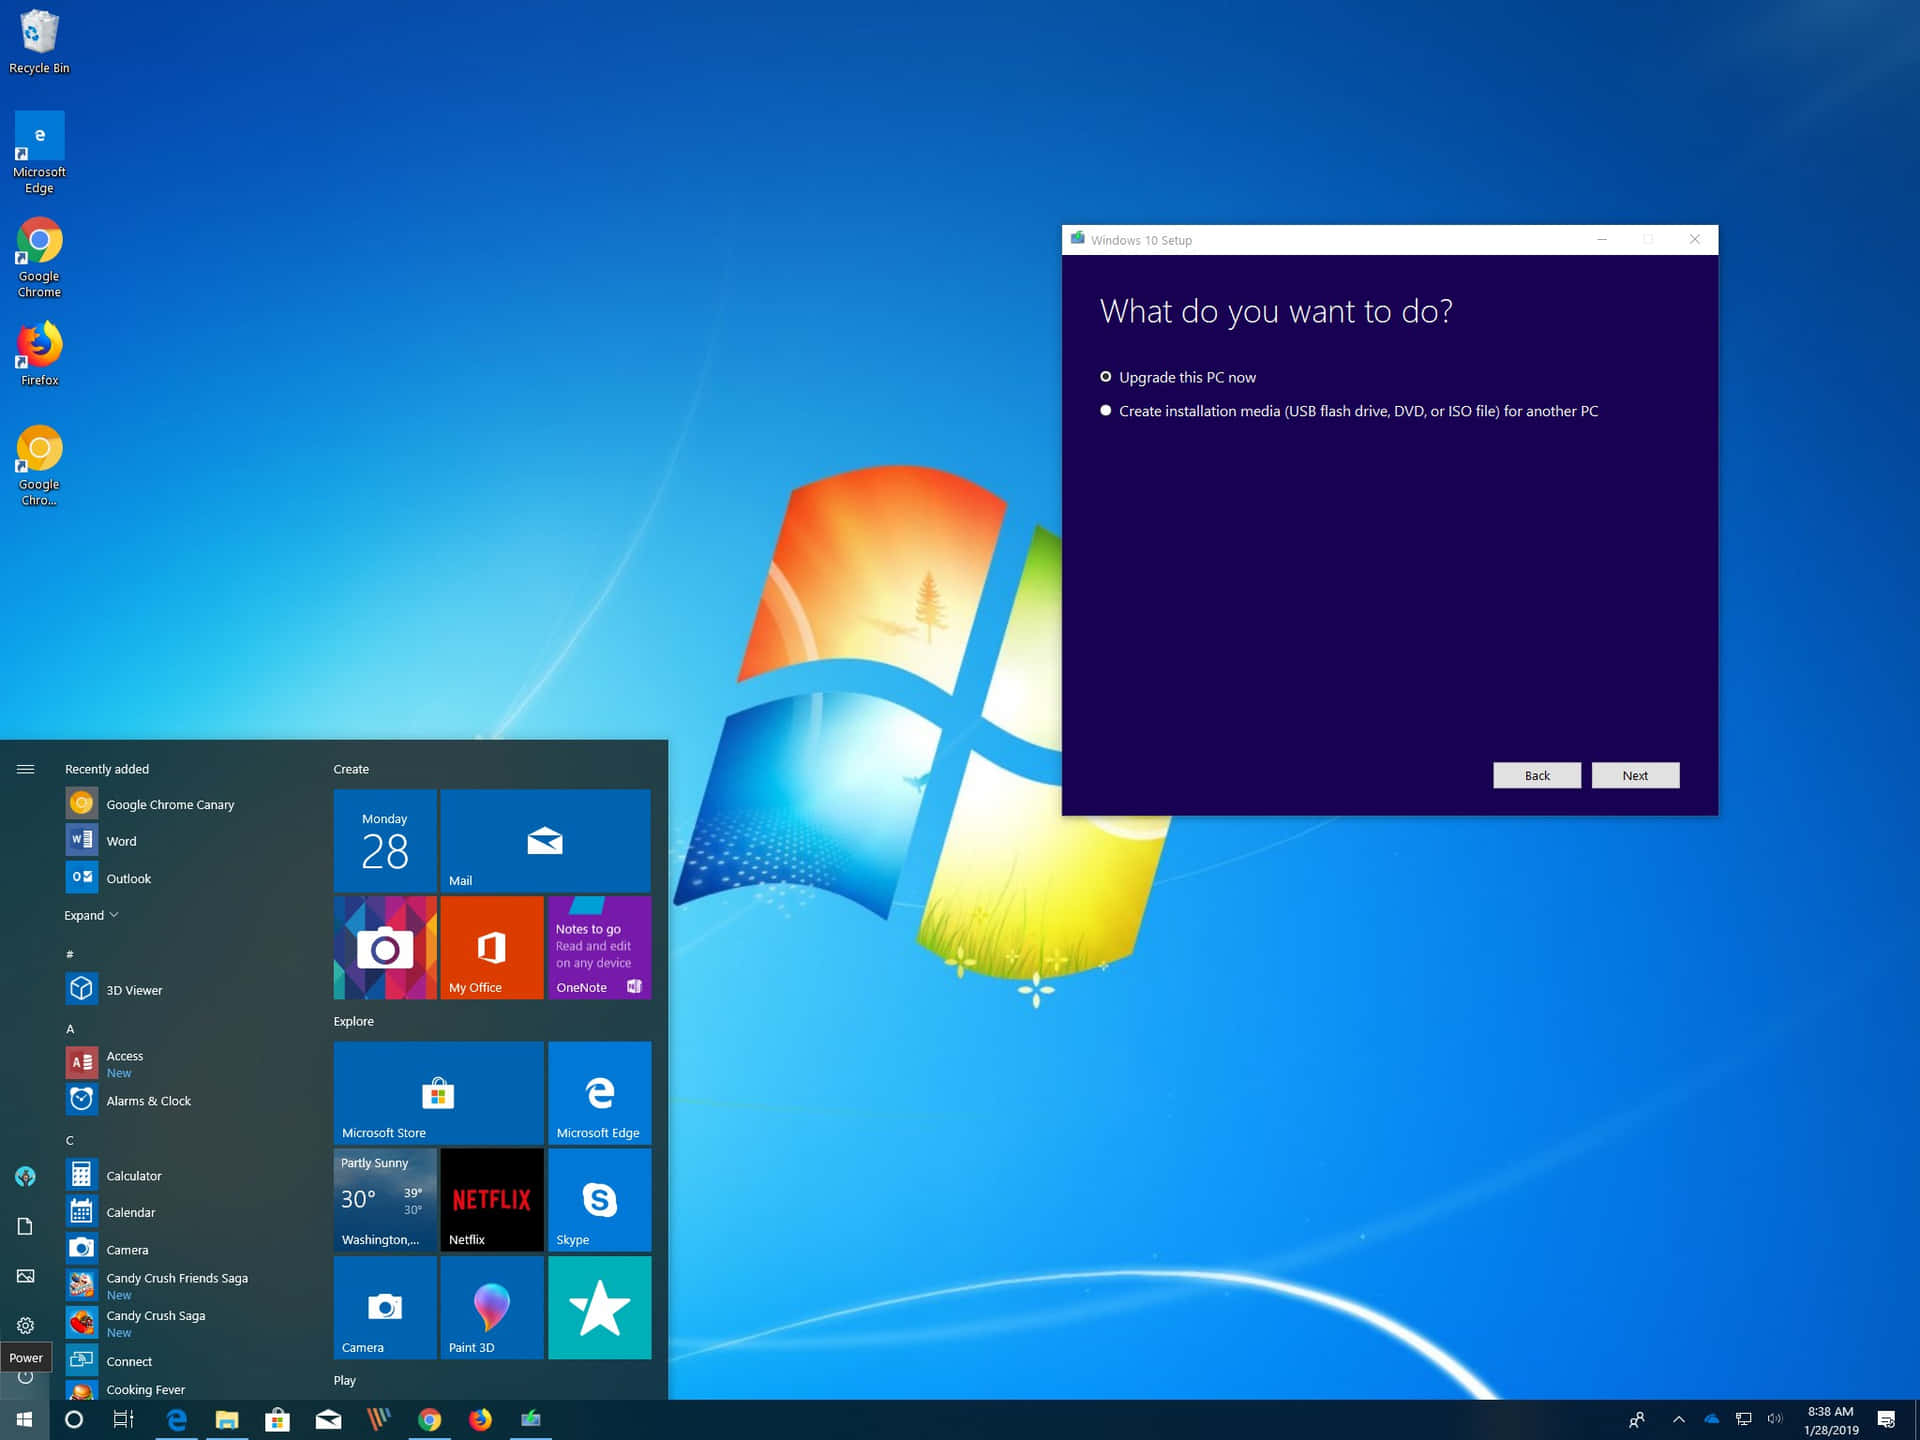 Ilsistema Operativo Windows 7 Più Recente E Aggiornato